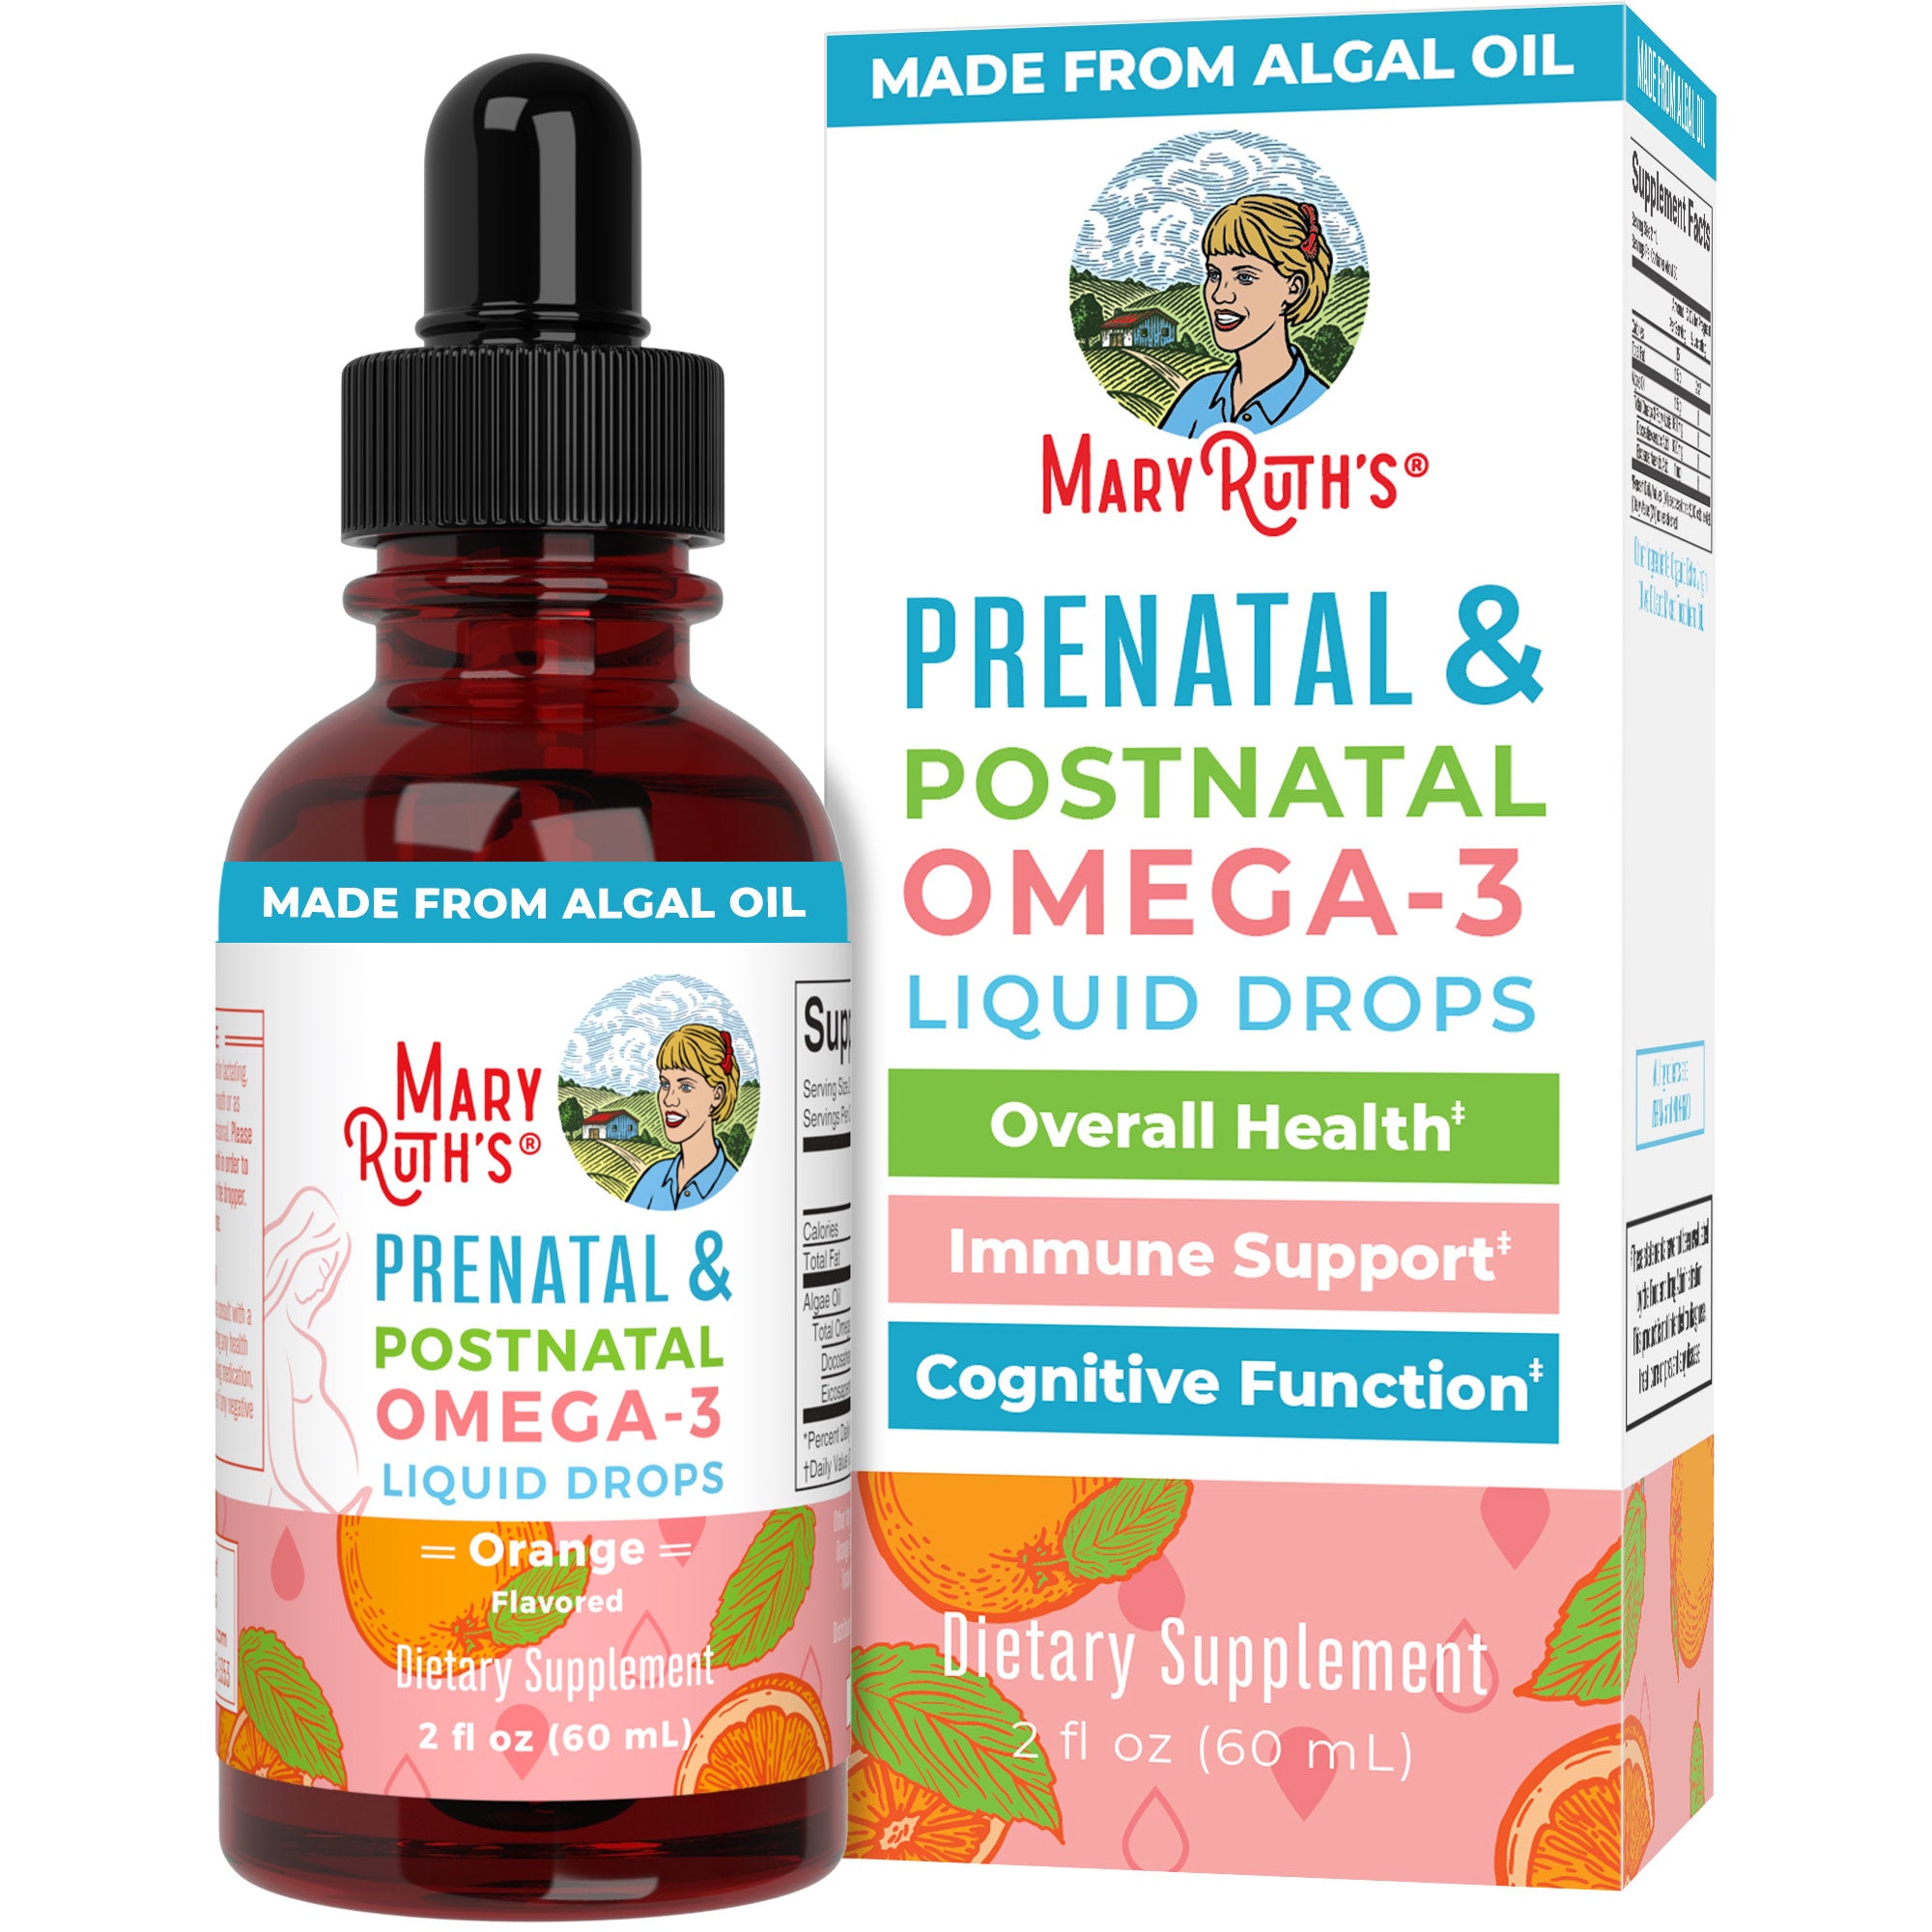 Prenatal & Postnatal Omega-3 Liquid Drops